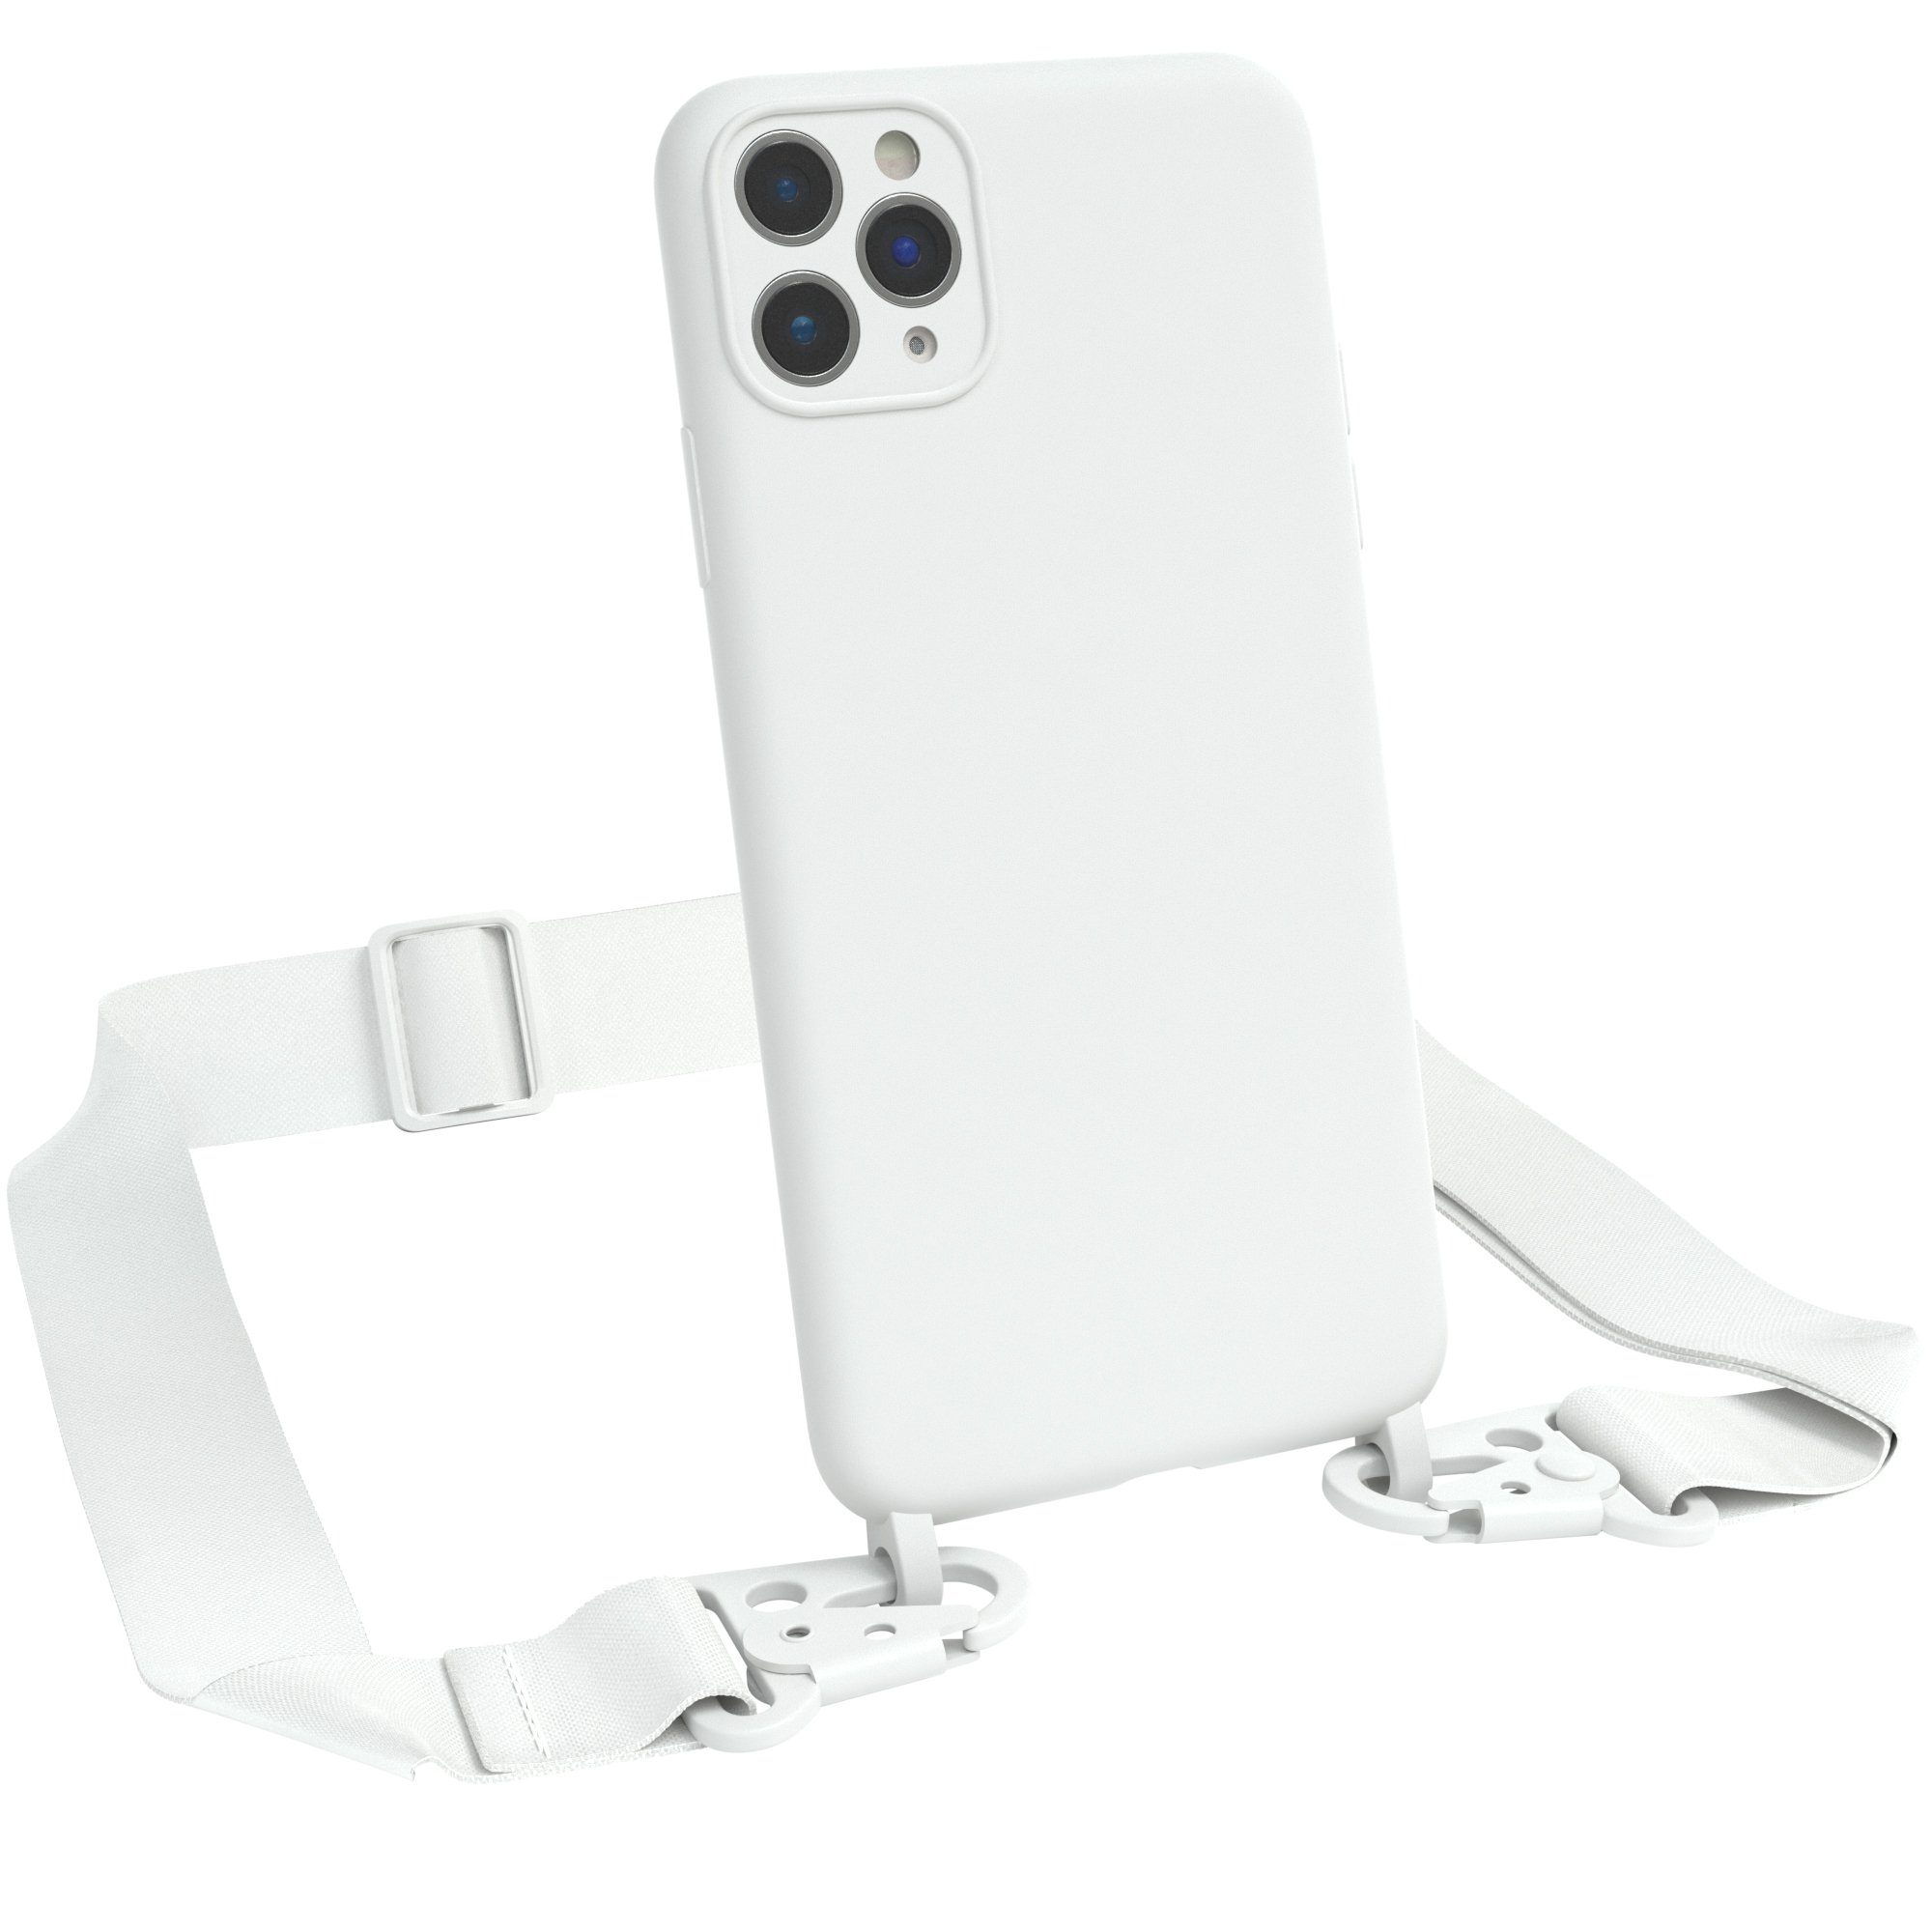 EAZY CASE Handykette Breitband Kette für Apple iPhone 11 Pro Max 6,5 Zoll, Ketten Hülle 2in1 Handyhülle mit abnehmbarer Kette Karabiner Bag Weiß